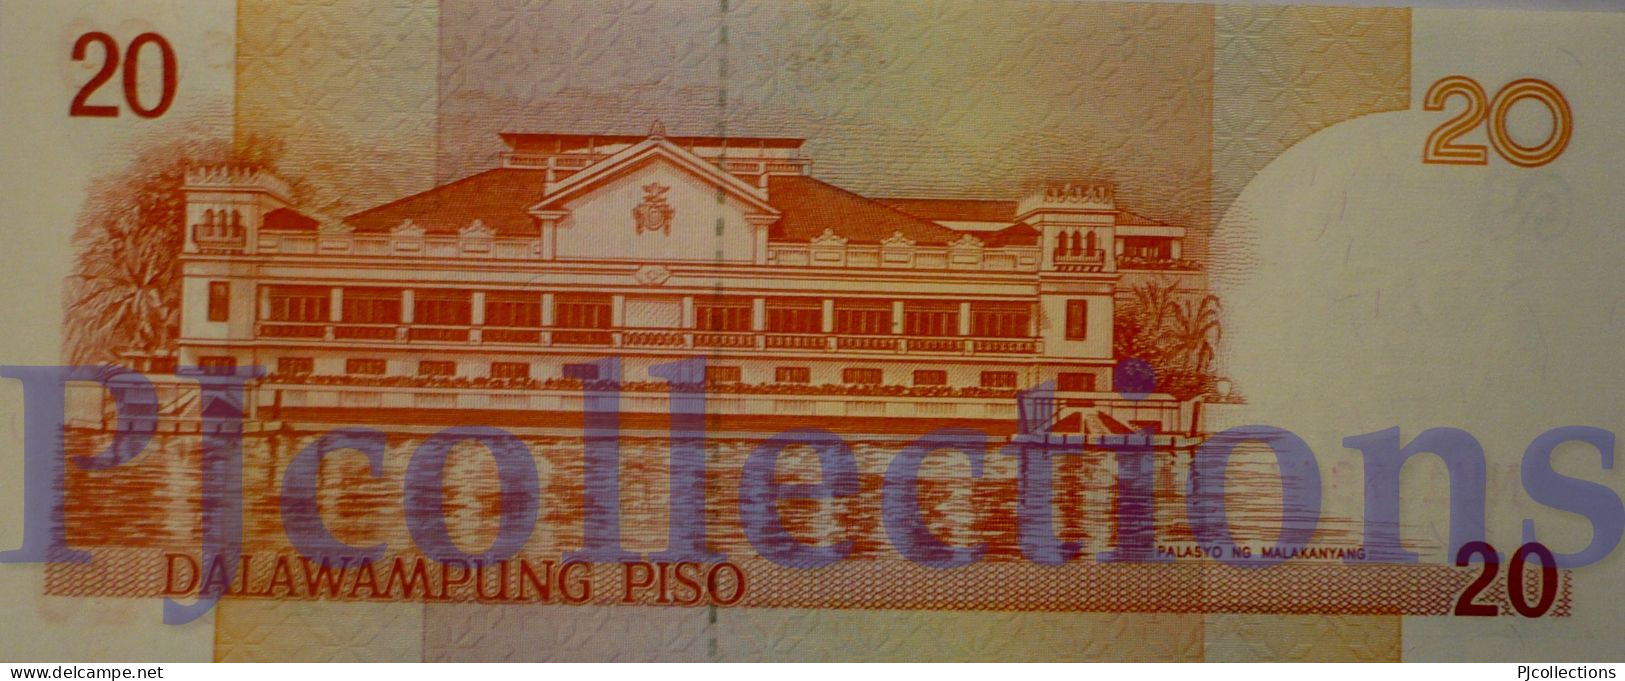 PHILIPPINES 20 PISO 1997 PICK 182a UNC - Filipinas